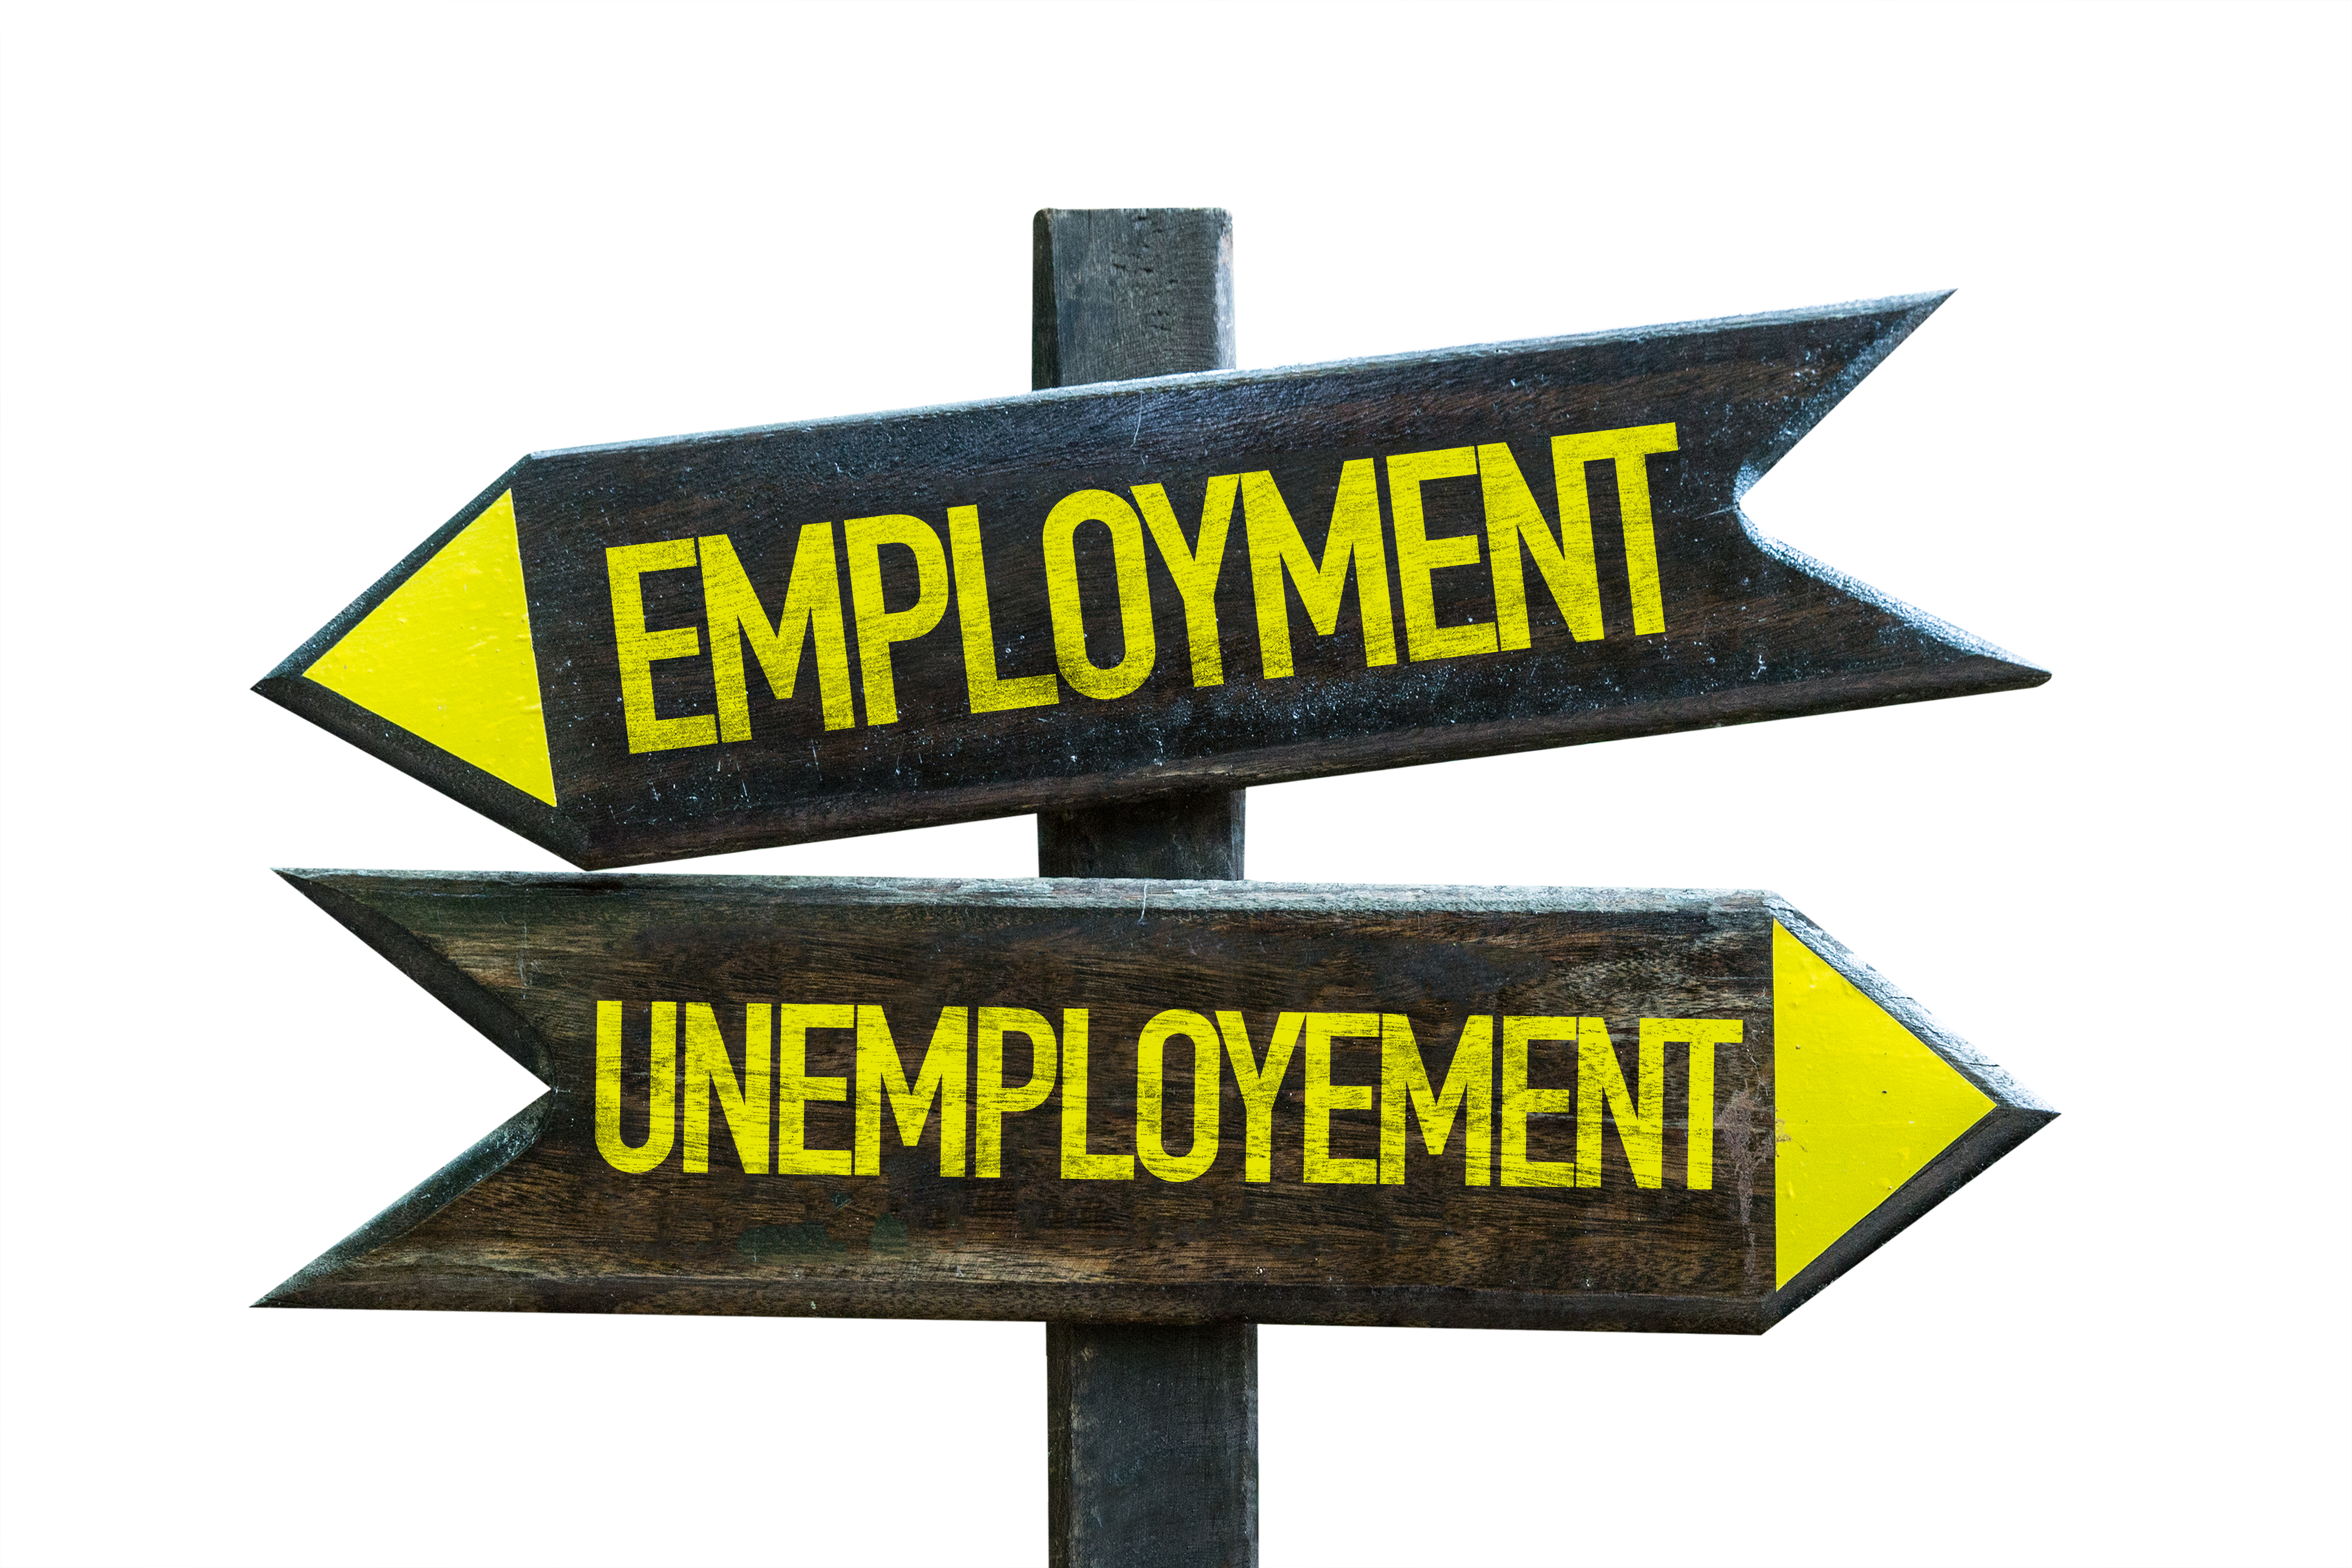 Employed or Unemployed?